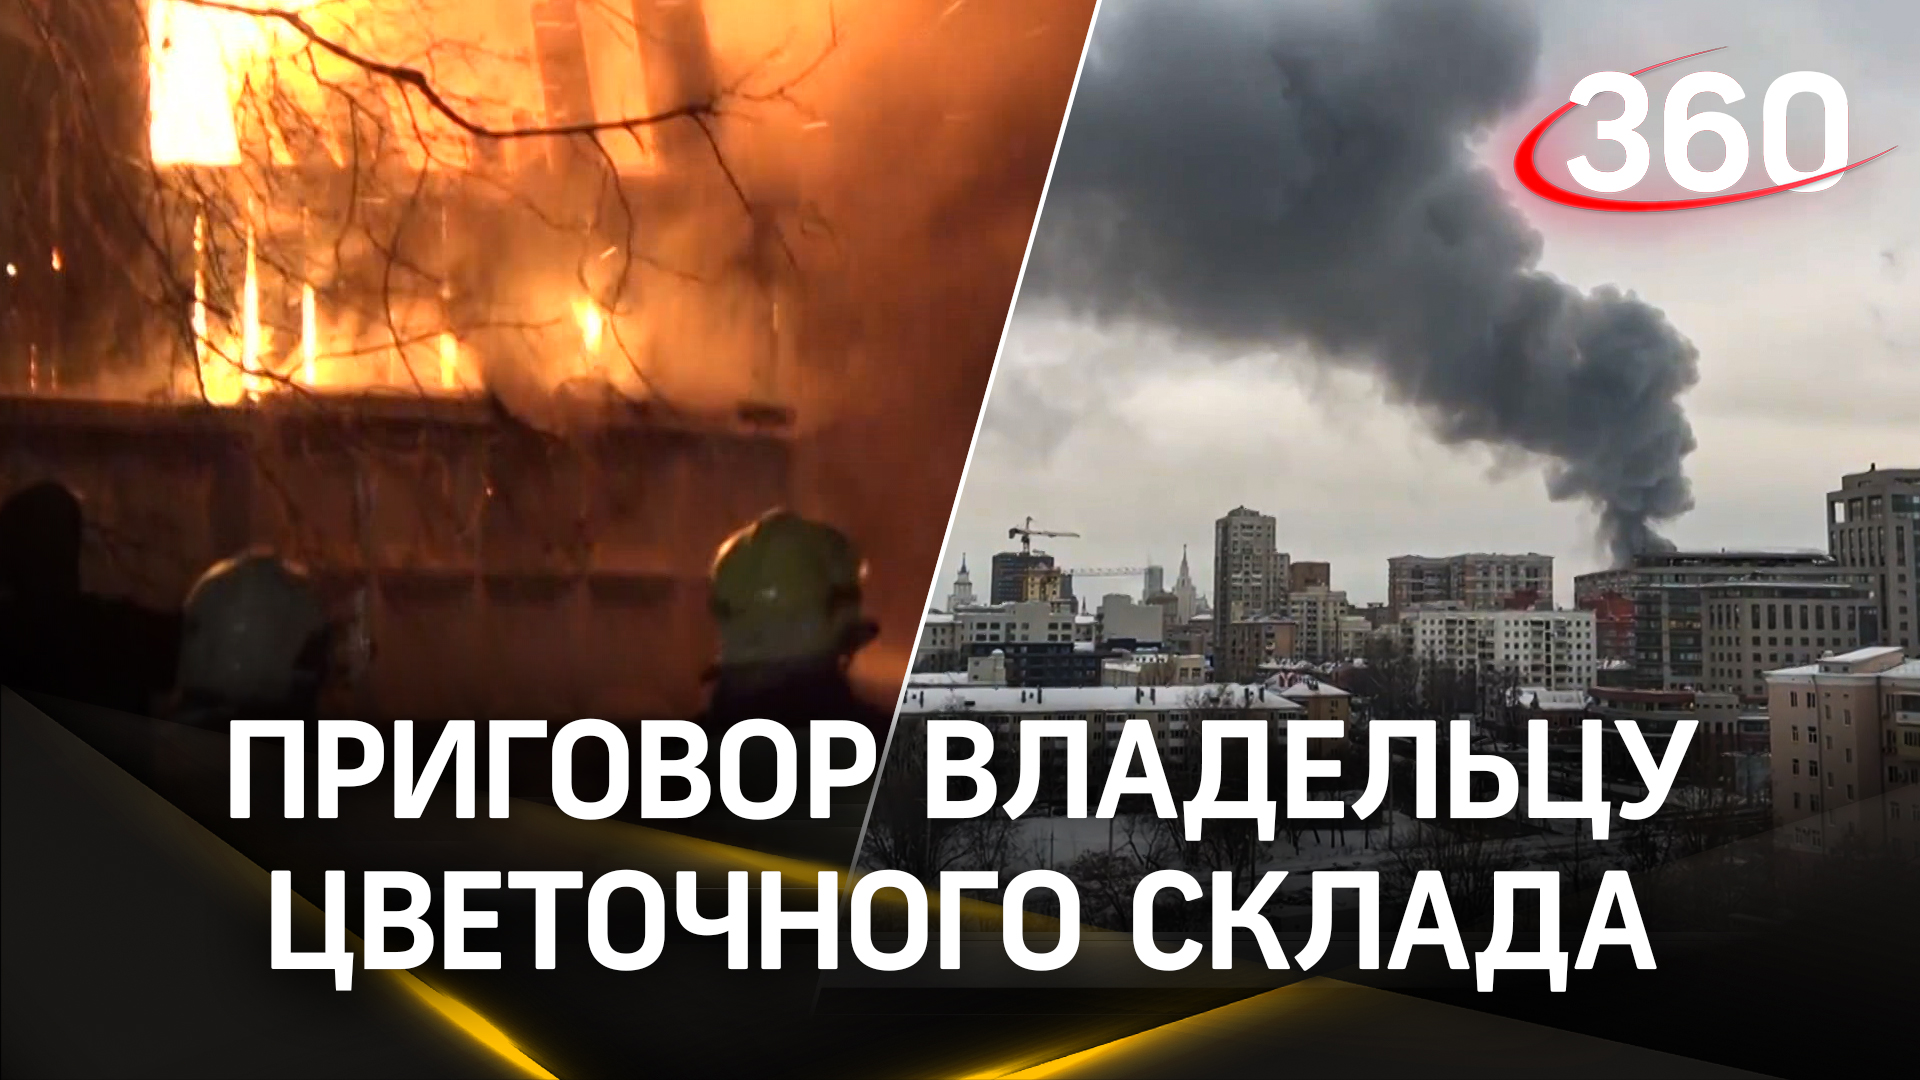 Сгорели 7 человек: бизнесмену из Москвы дали 3 года колонии за пожар на складе